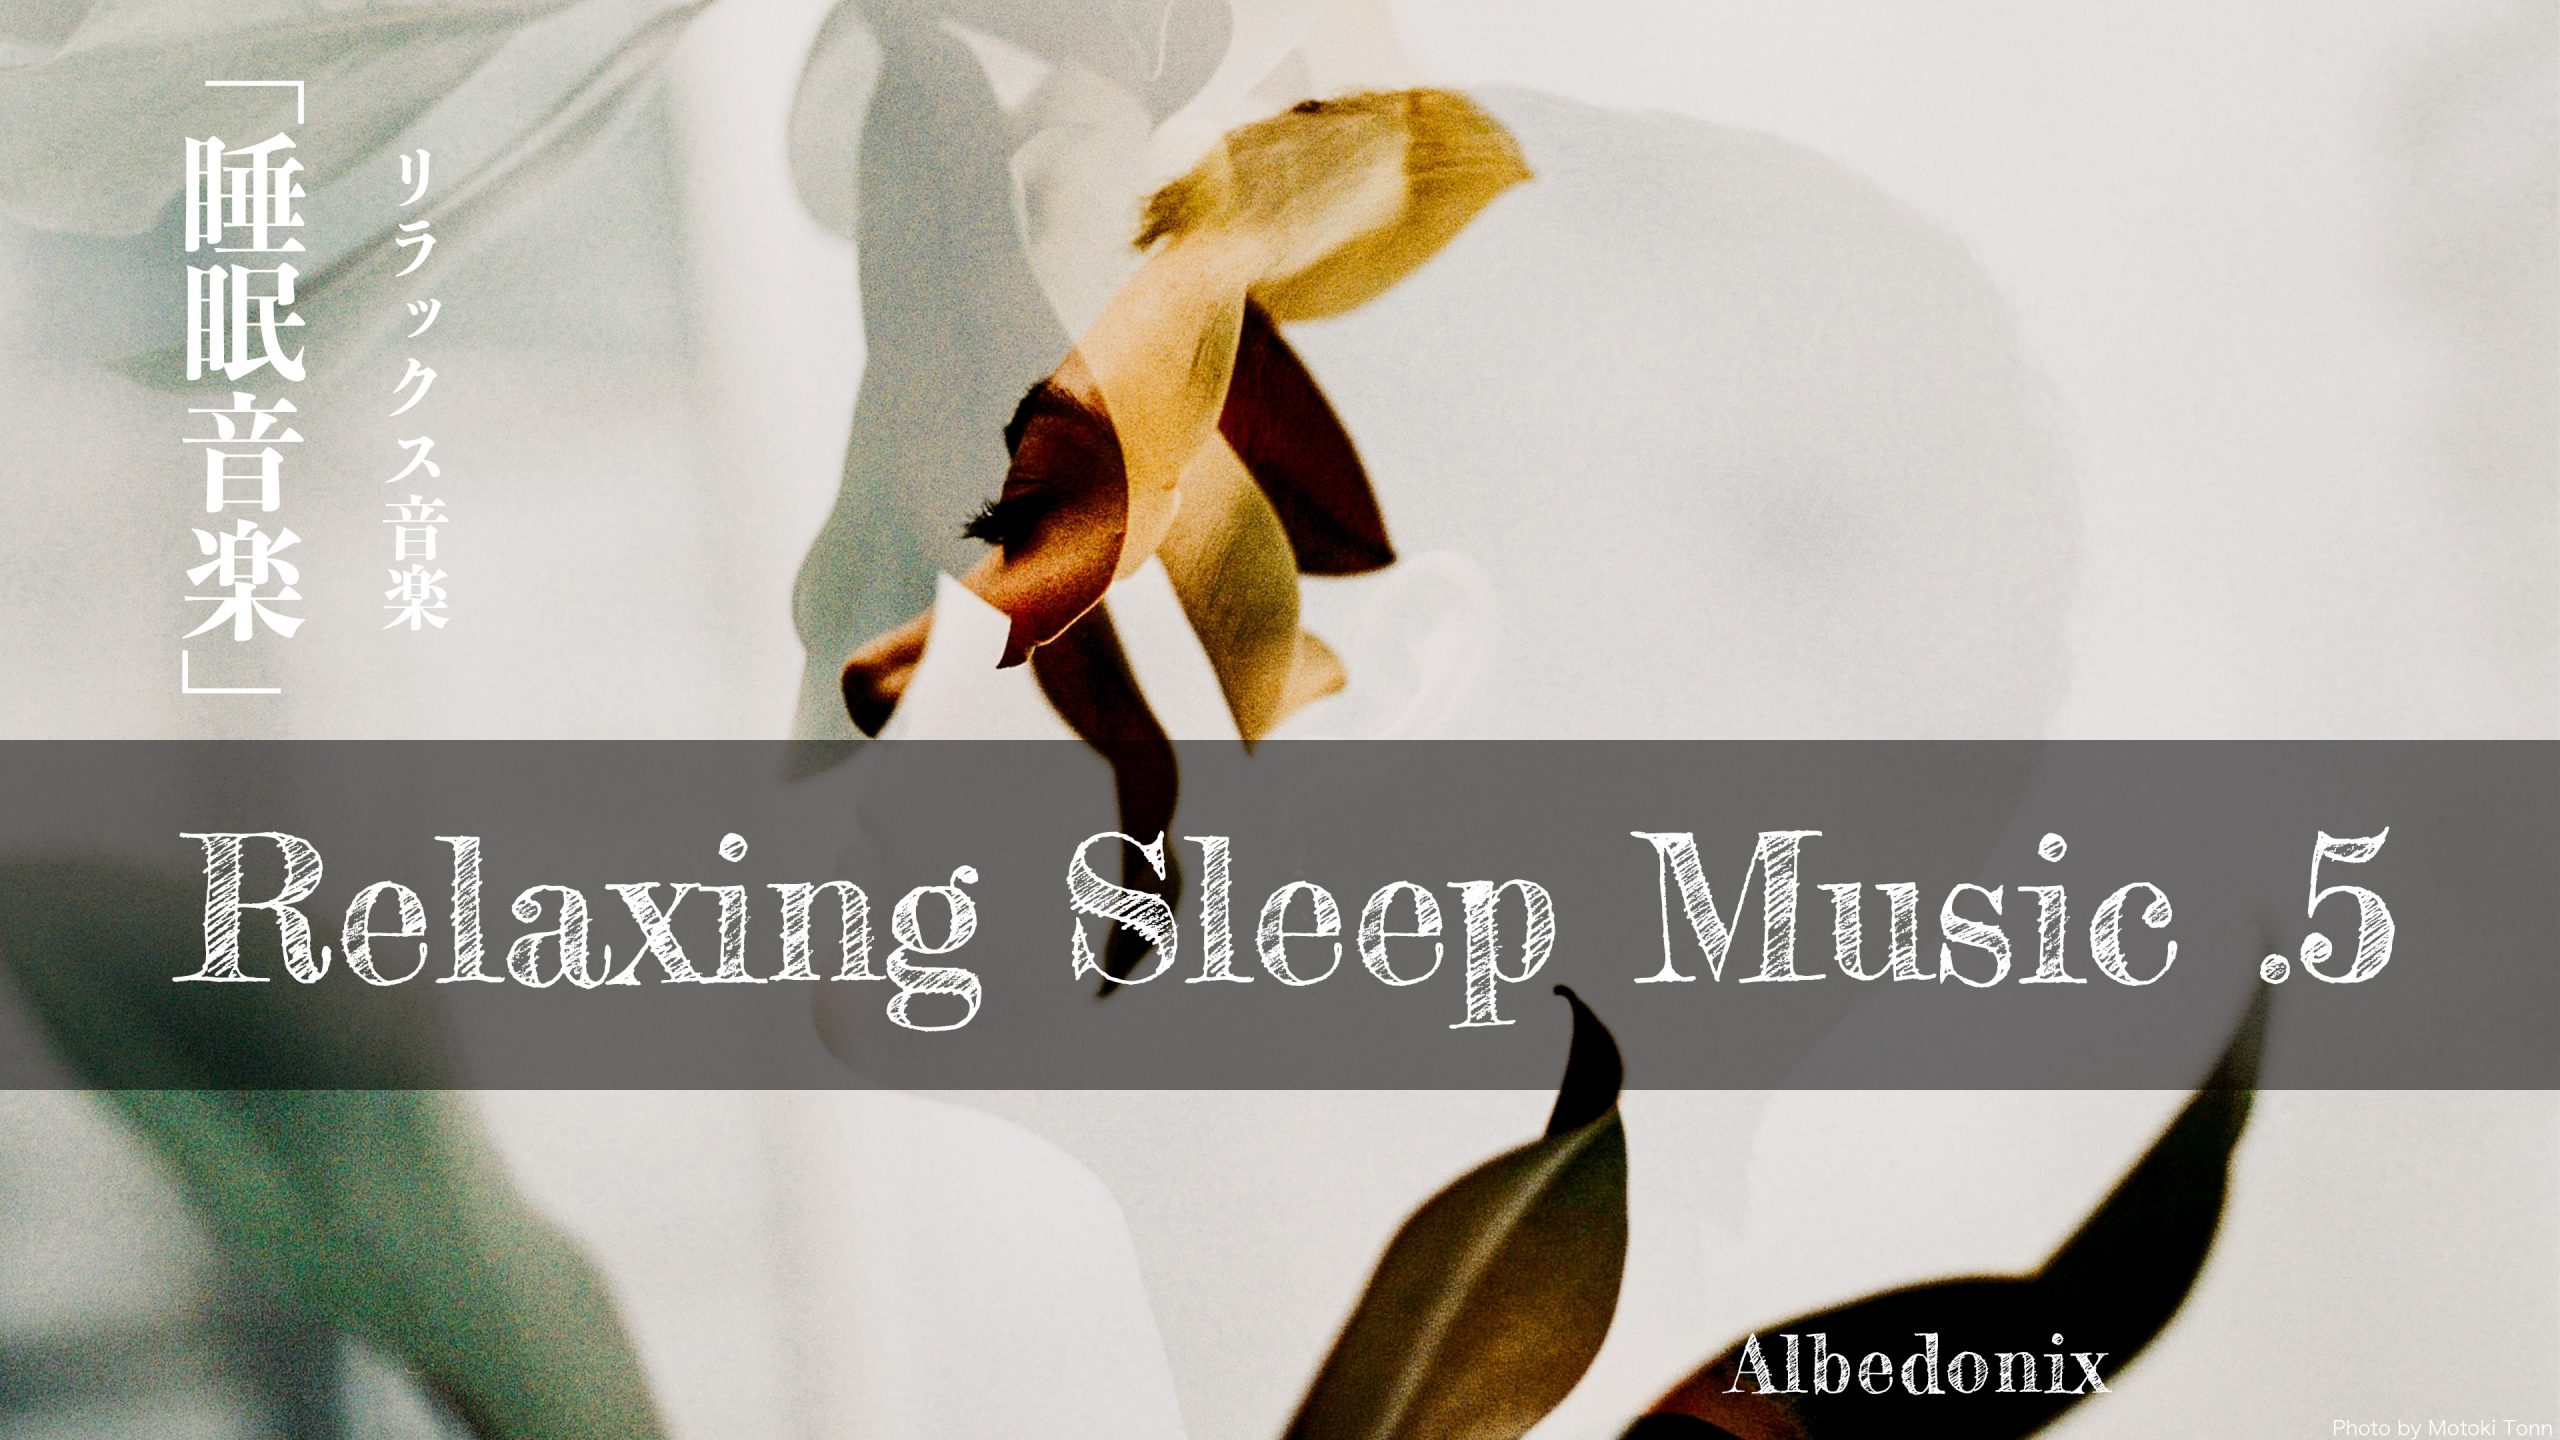 【睡眠】.5 リラックス音楽 睡眠導入、熟睡、BGM、雨音、勉強、集中 Albedonix